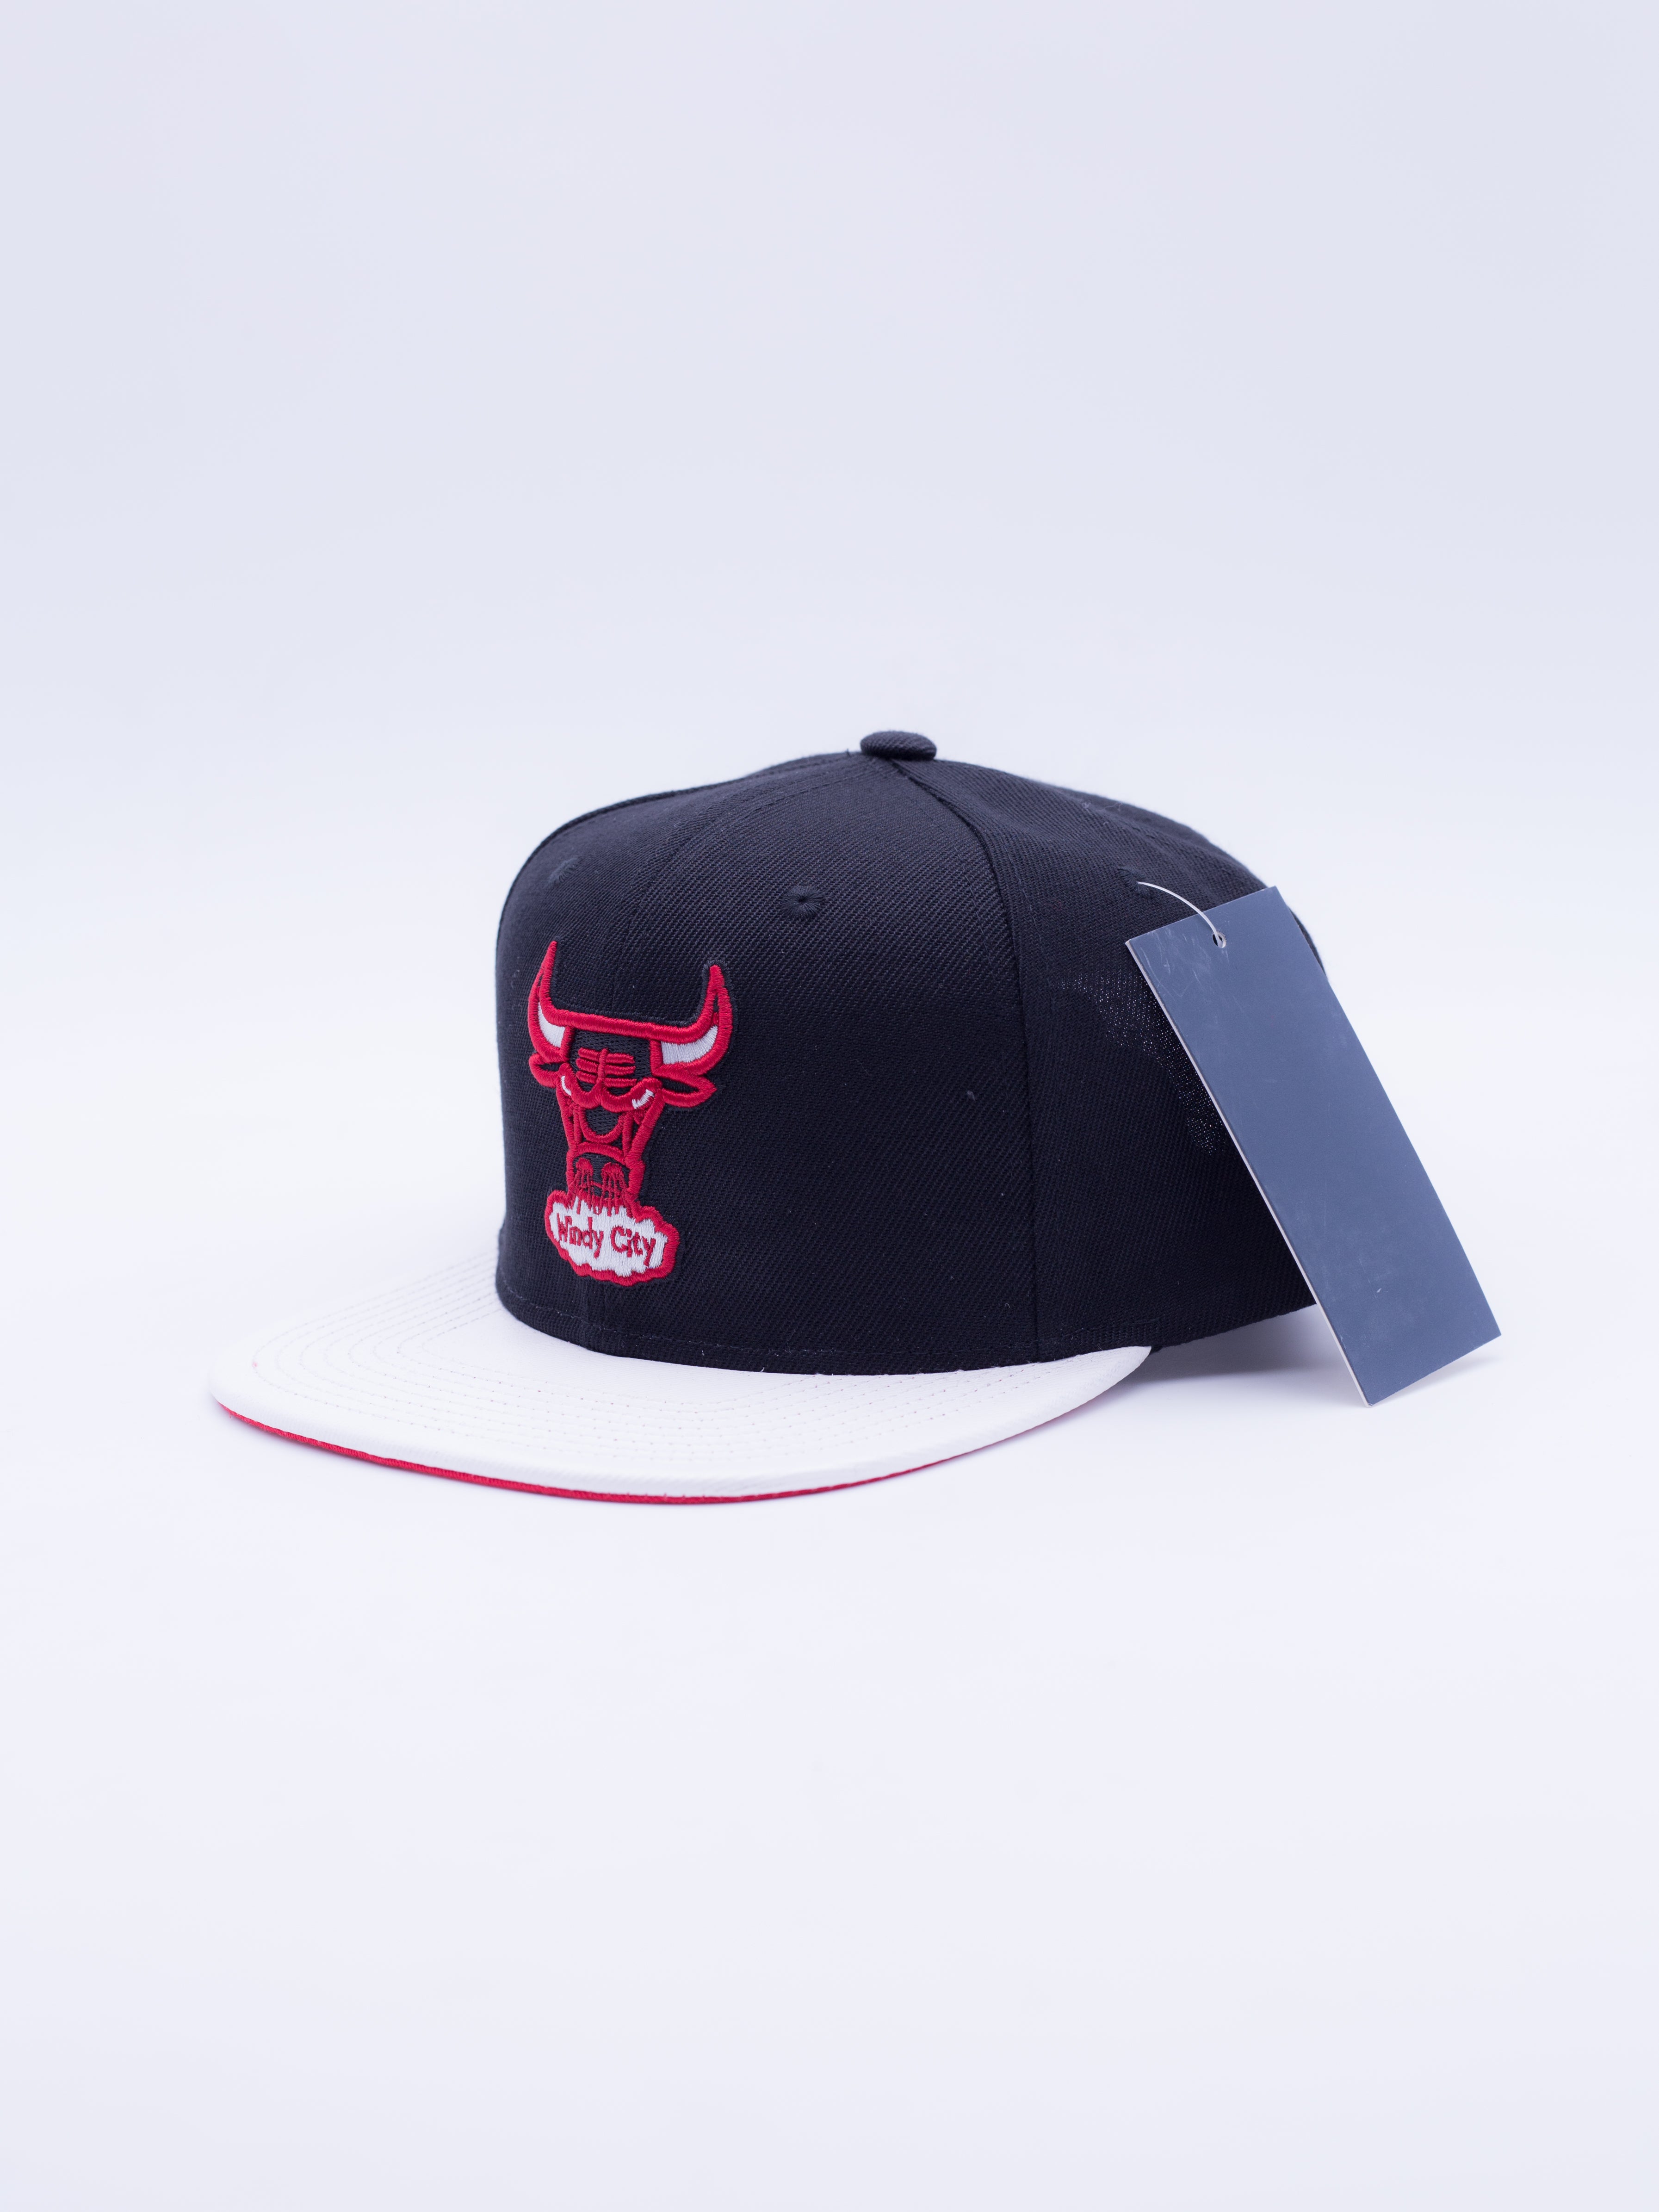 Chicago Bulls Snapback Black/Red/White